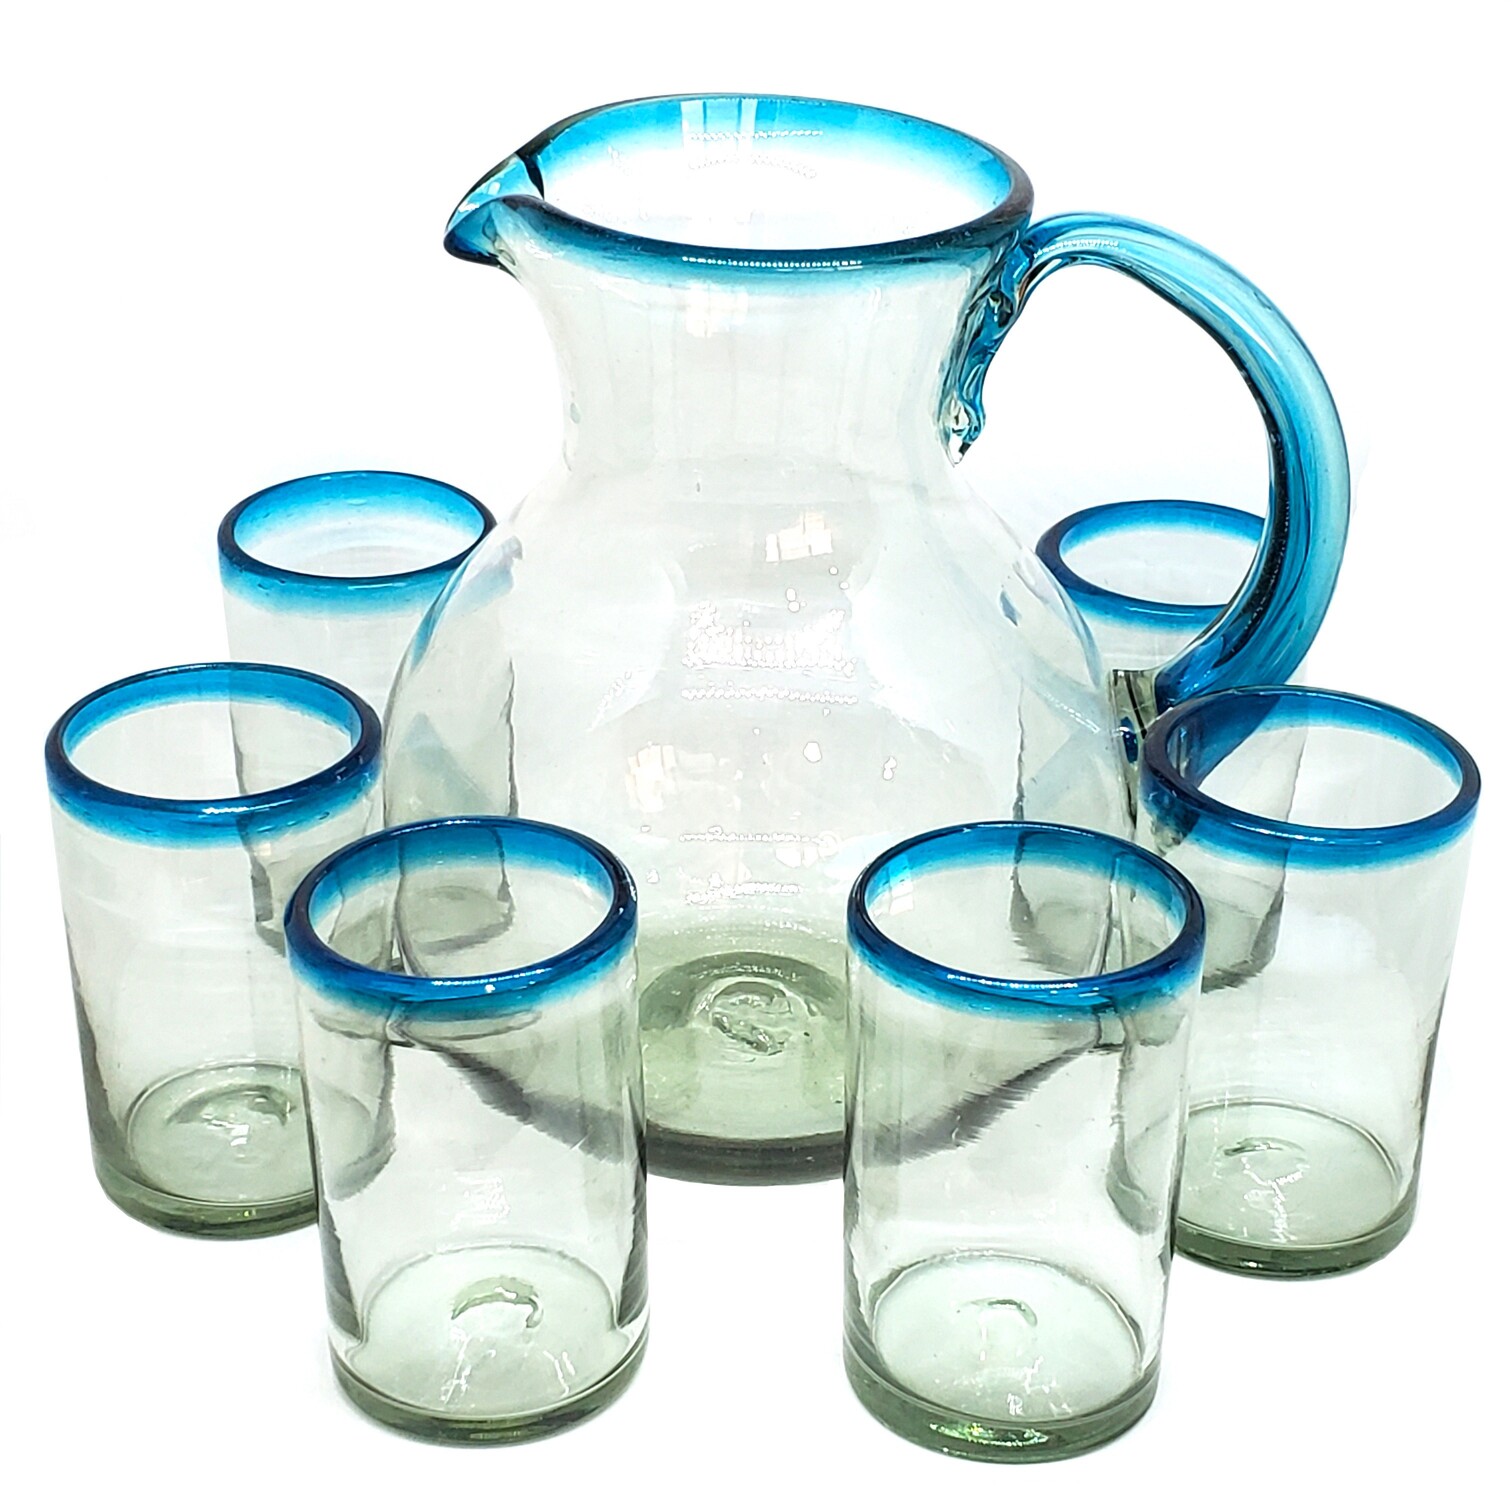 Juego de jarra y 6 vasos grandes con borde azul aqua, 120 oz, Vidrio Reciclado, Libre de Plomo y Toxinas